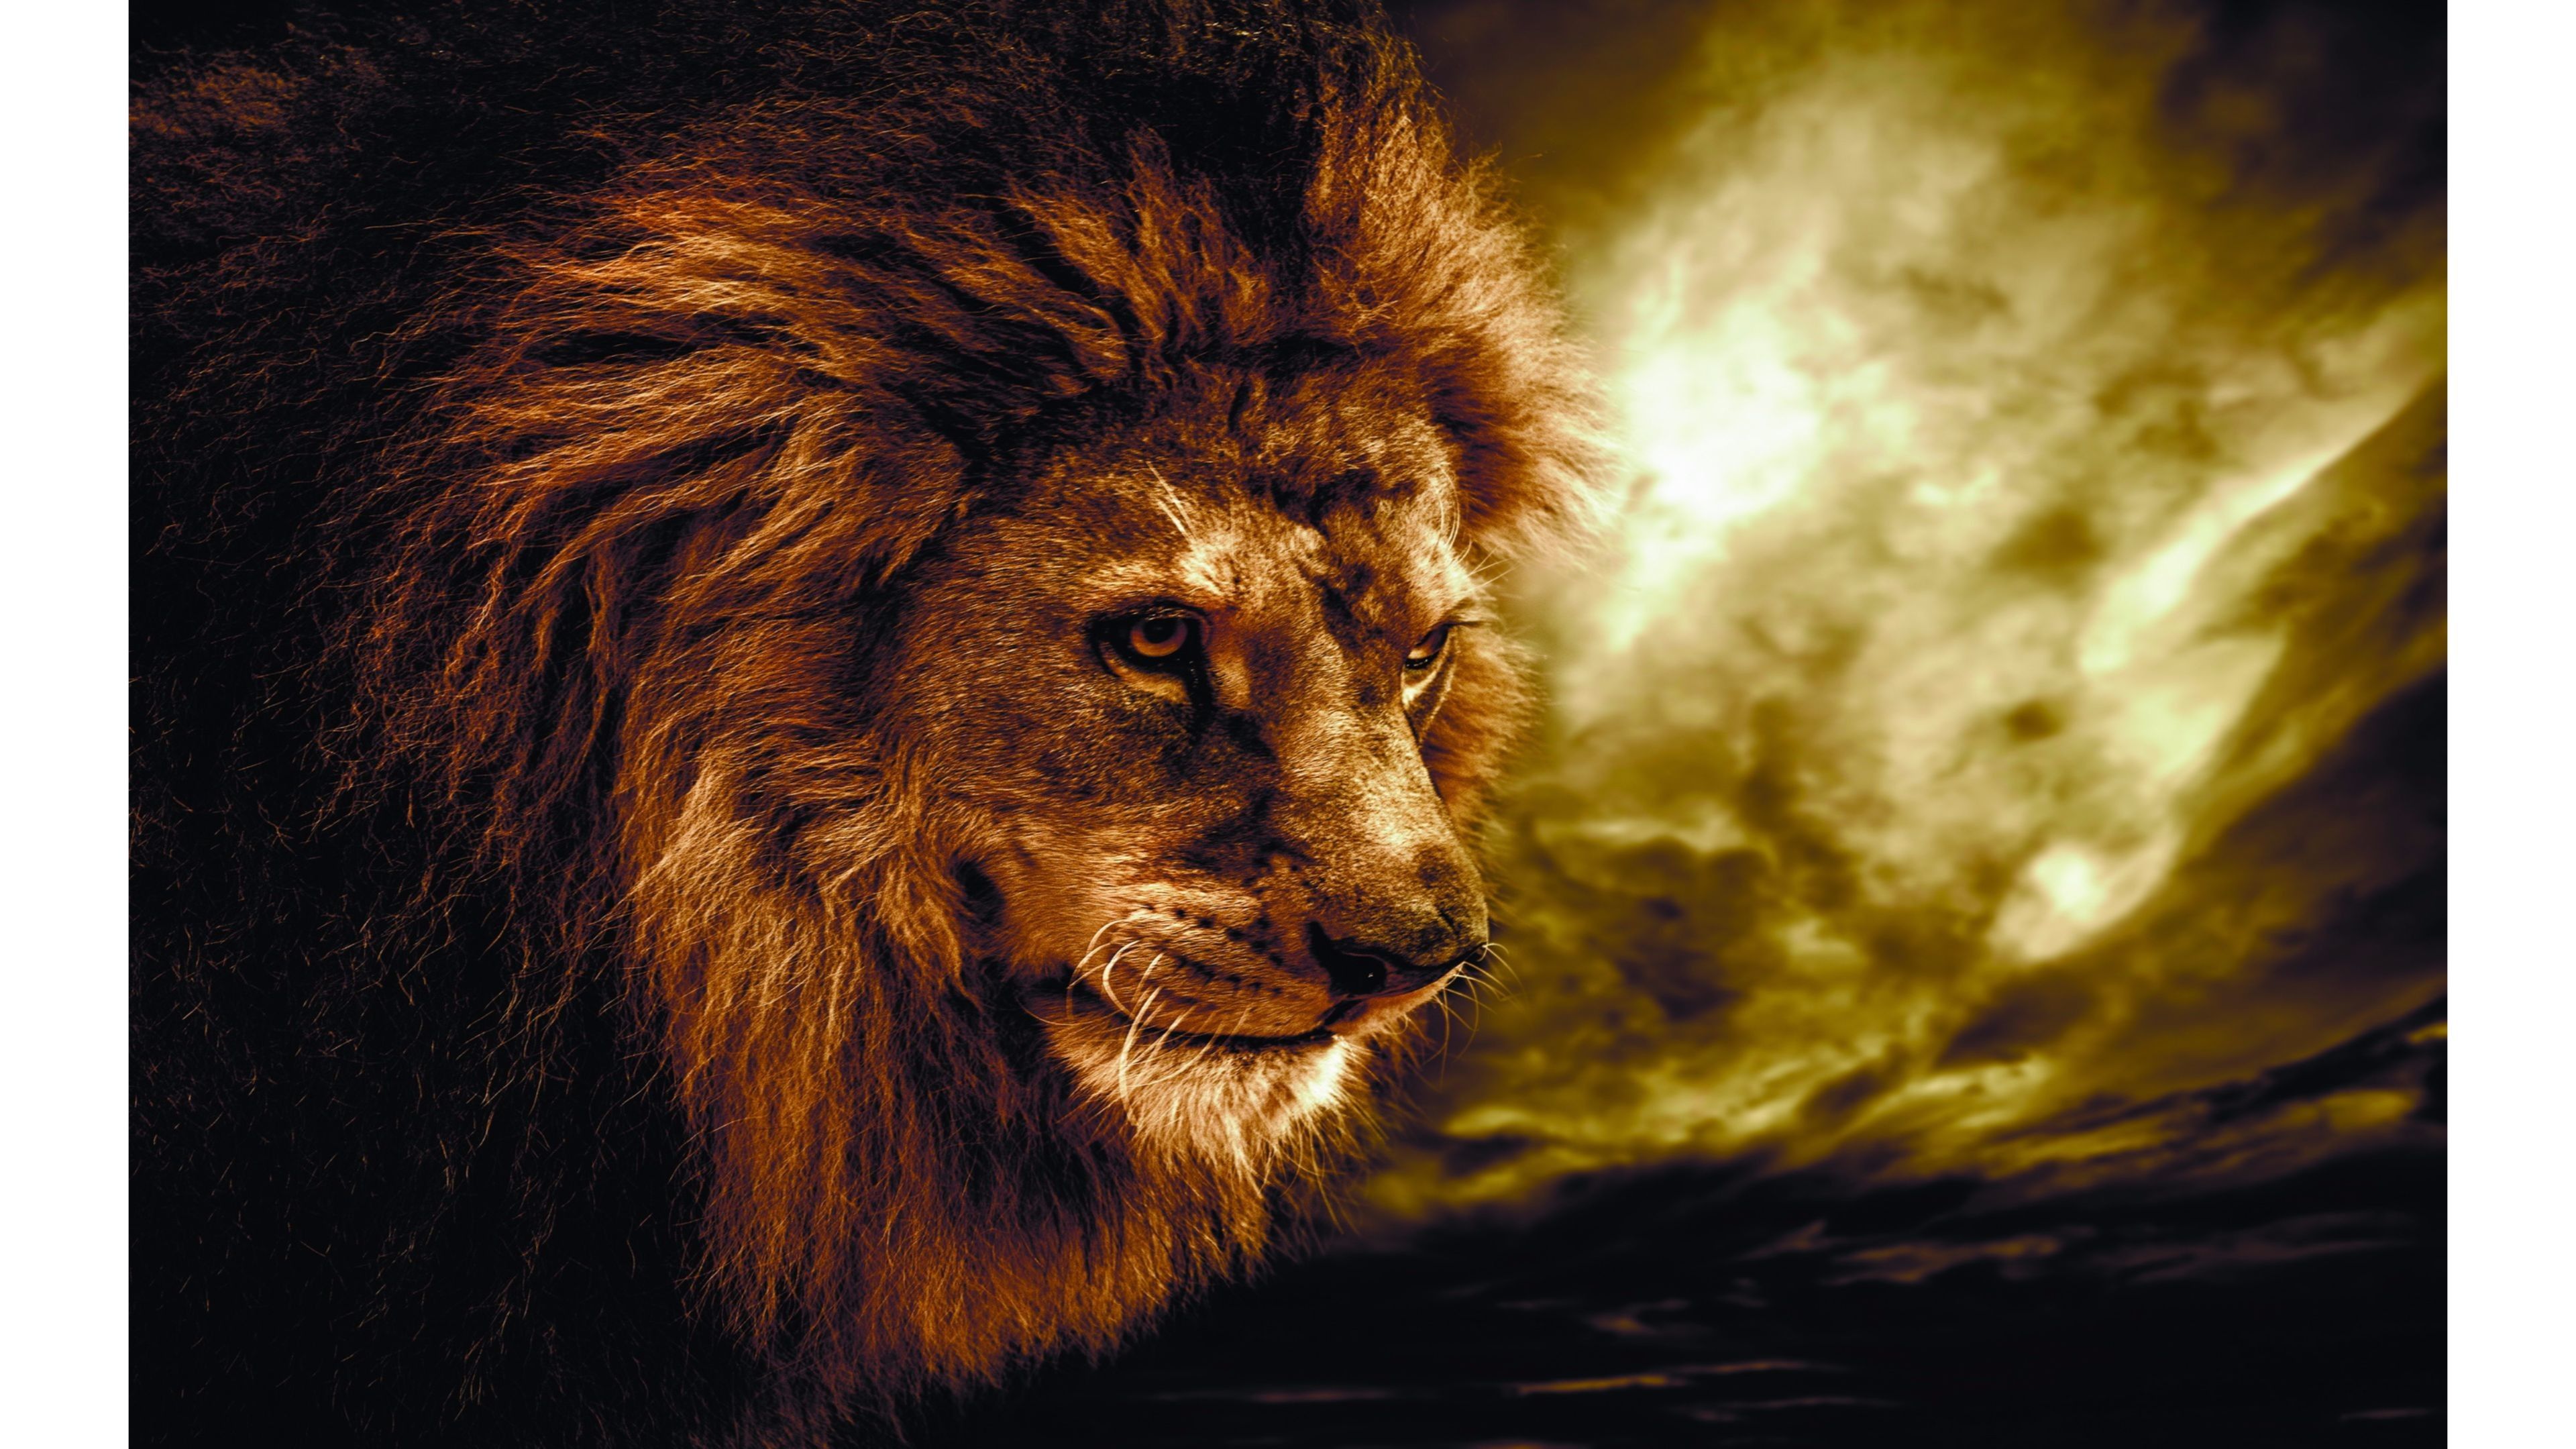 جذاب ترین عکس رایگان و واقعی  شیر سلطان جنگل با زمینه مشکی و آتش 